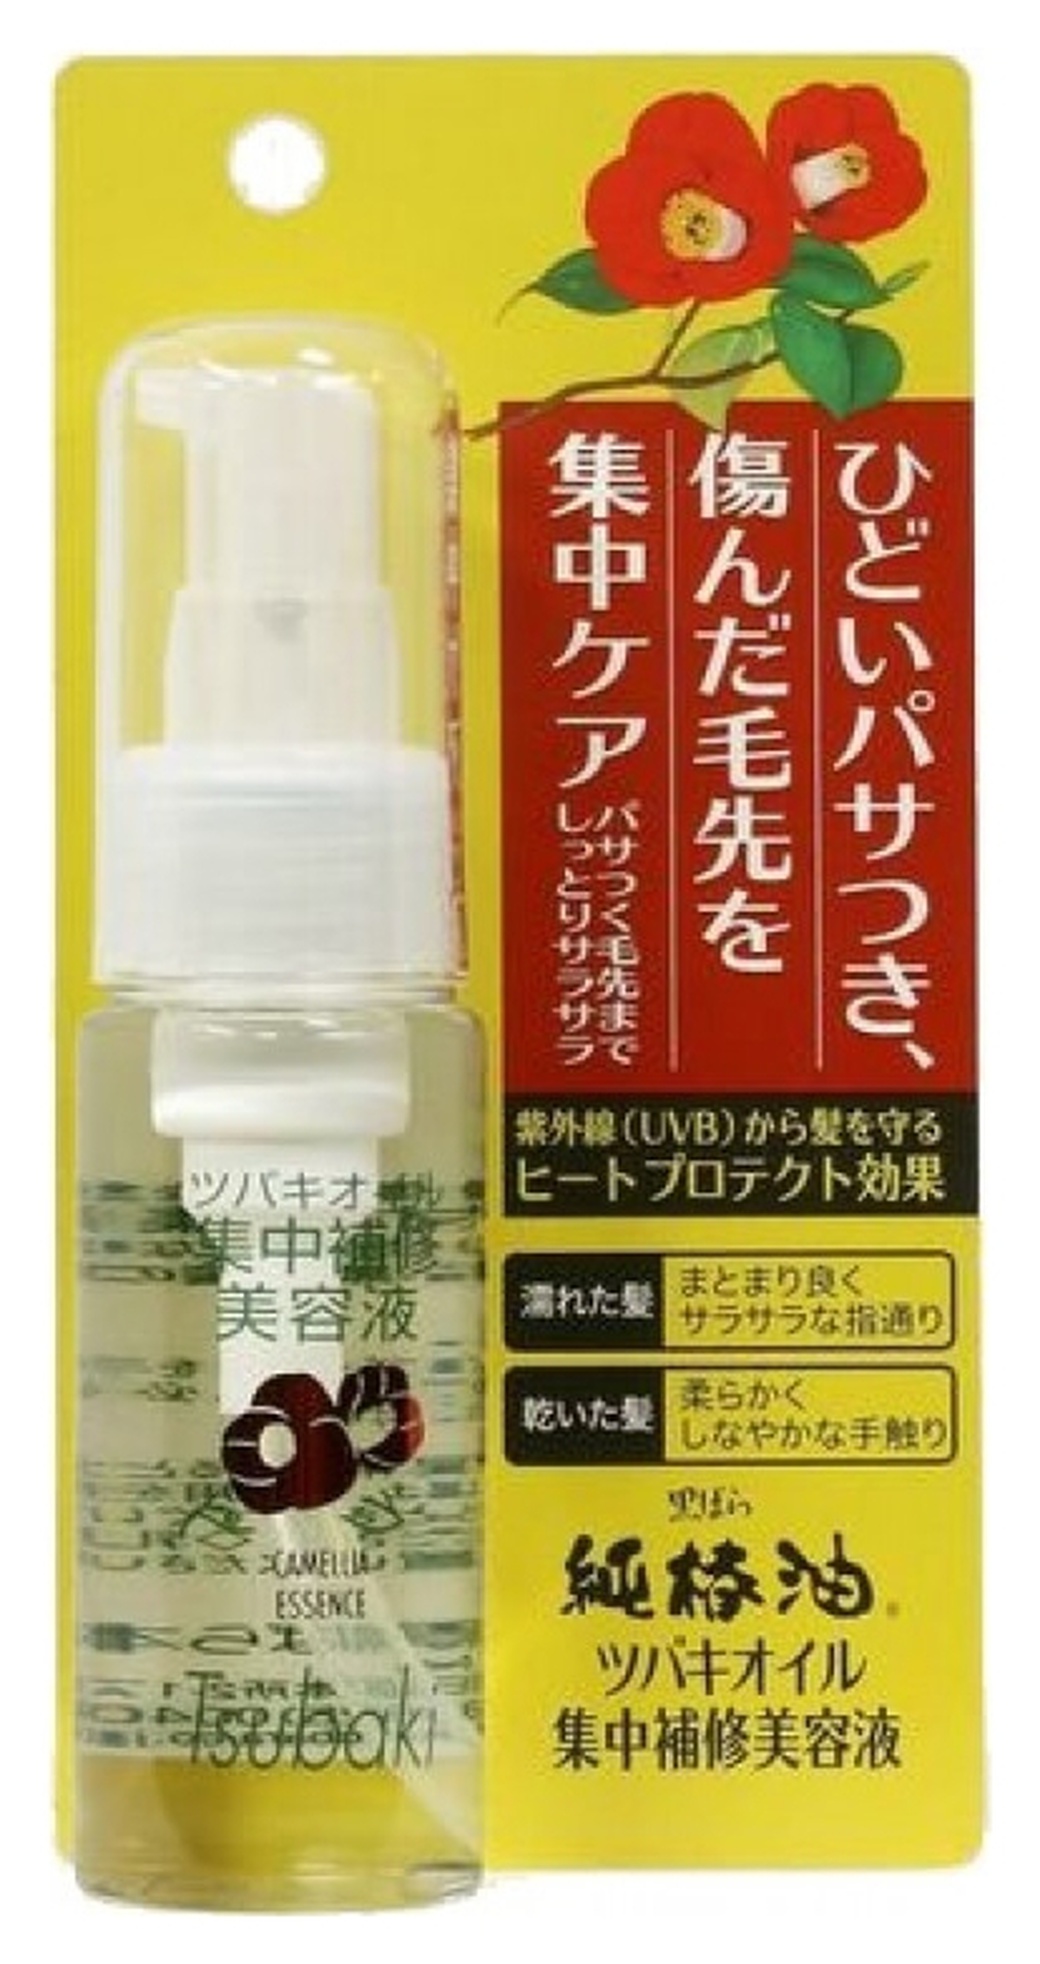 Kurobara "Tsubaki Oil" Концентрированная эссенция для восстановления поврежденных волос, с маслом камелии (UV защита и защита при сушке феном), 50 мл фото